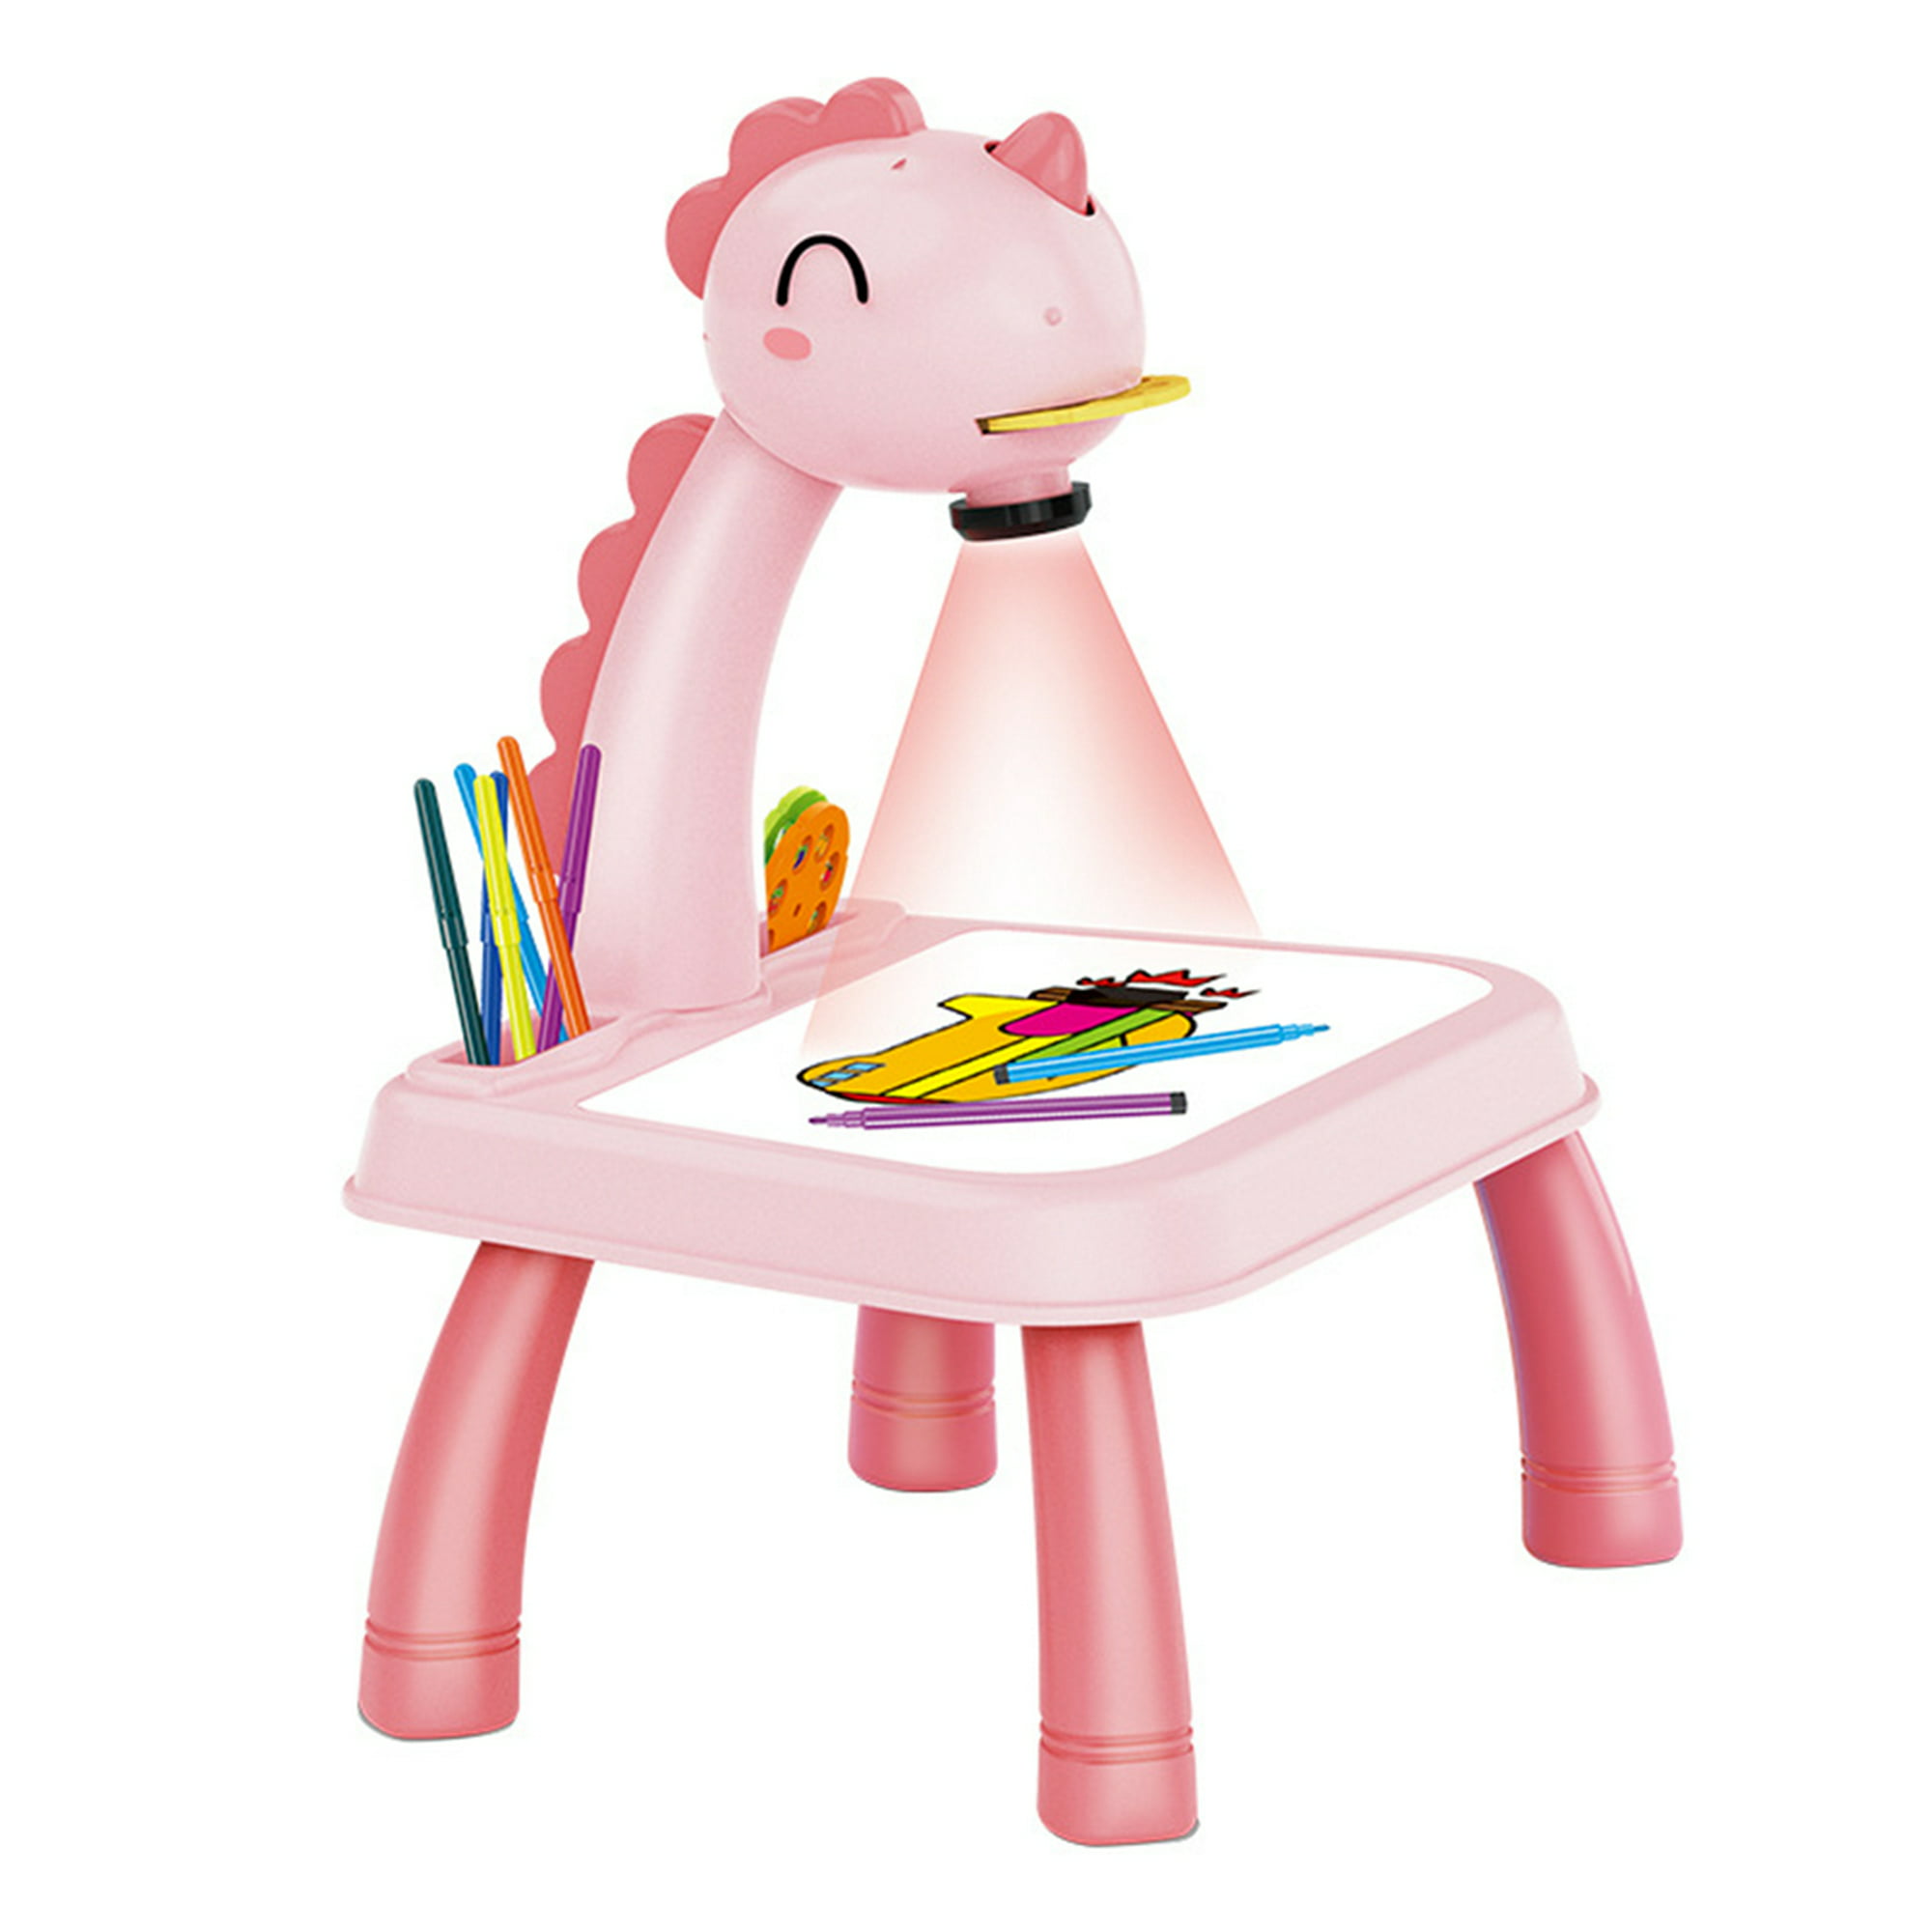 Proyector de dibujo Proyector de pintura Proyector de juguete de dibujo  Proyector de escritorio Proyector de jugueteJuguete de dibujo Mgaxyff No